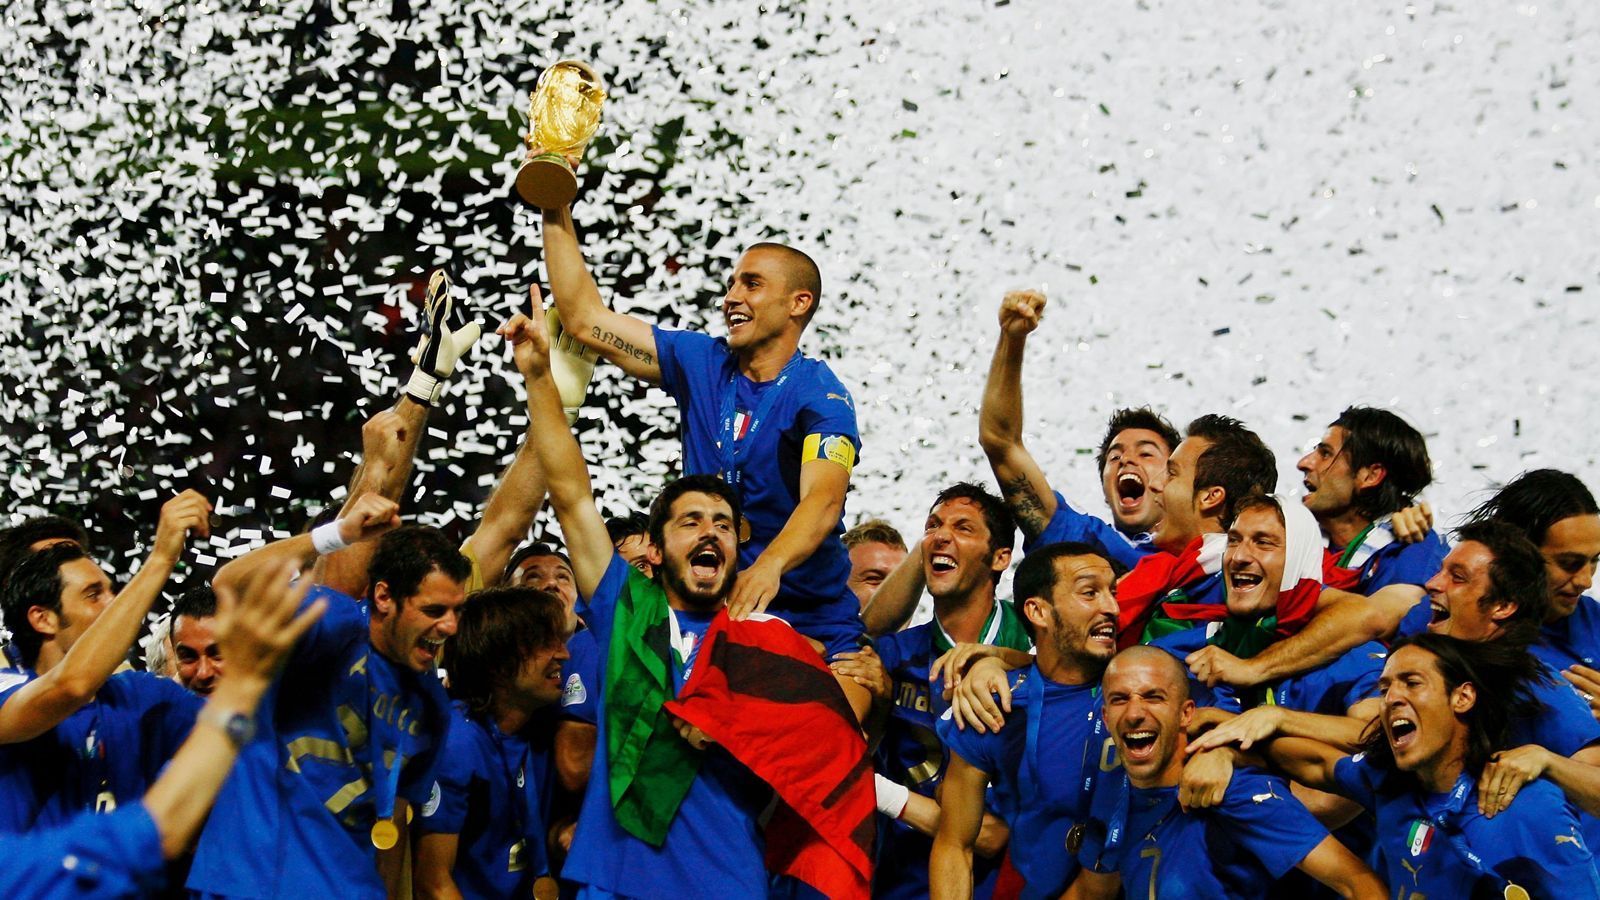 
                <strong>WM 2006 - Italien </strong><br>
                Kapitän Fabio Cannavaro reckt den WM-Pokal in die Höhe, während seine Teamkameraden frenetisch feiern. Beim Turnier in Deutschland gewinnt Italien im Elfmeterschießen gegen Frankreich zum vierten Mal die Weltmeisterschaft. Aufreger des Endspiels blieb der Kopfstoß und die folgende Rote Karte des zuvor überragenden französischen Spielmachers Zinedine Zidane.  
              